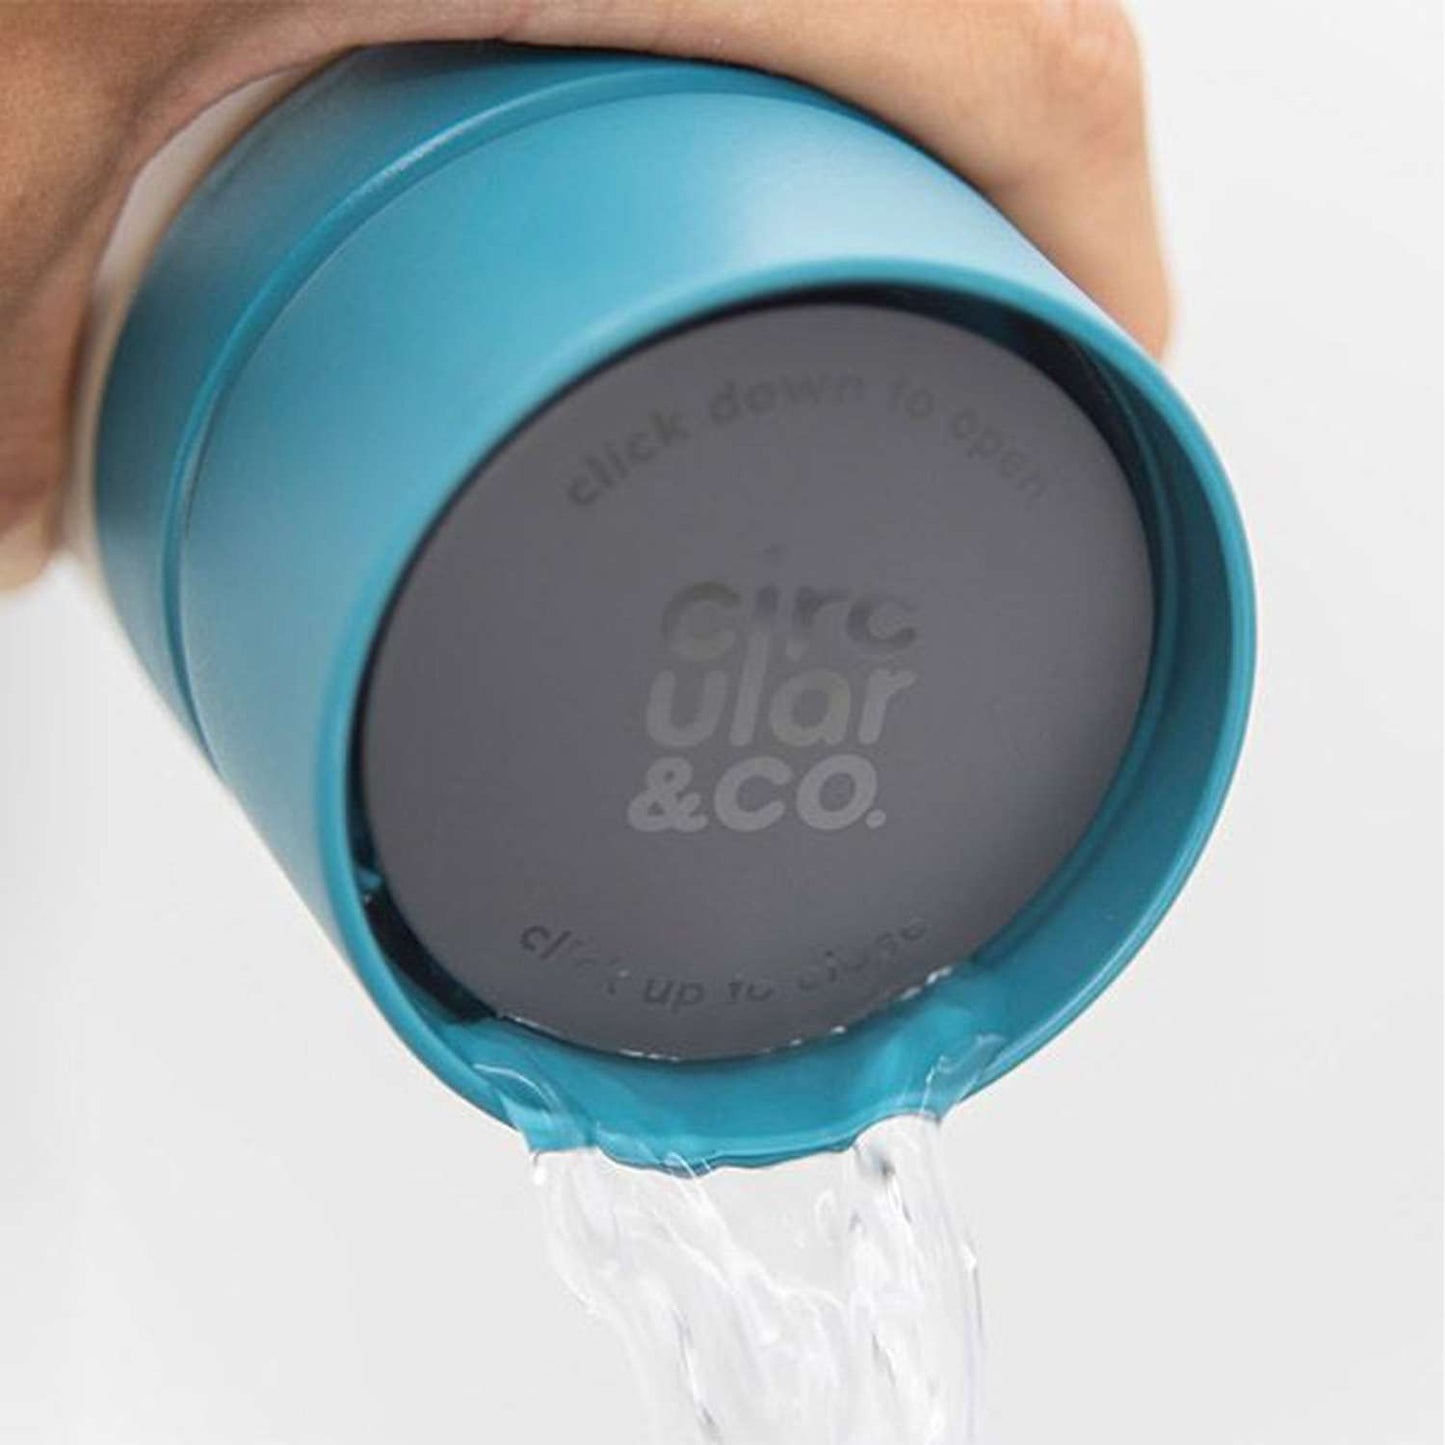 Circular&Co. Reusable Water Bottle 600ml - Blue/Grey